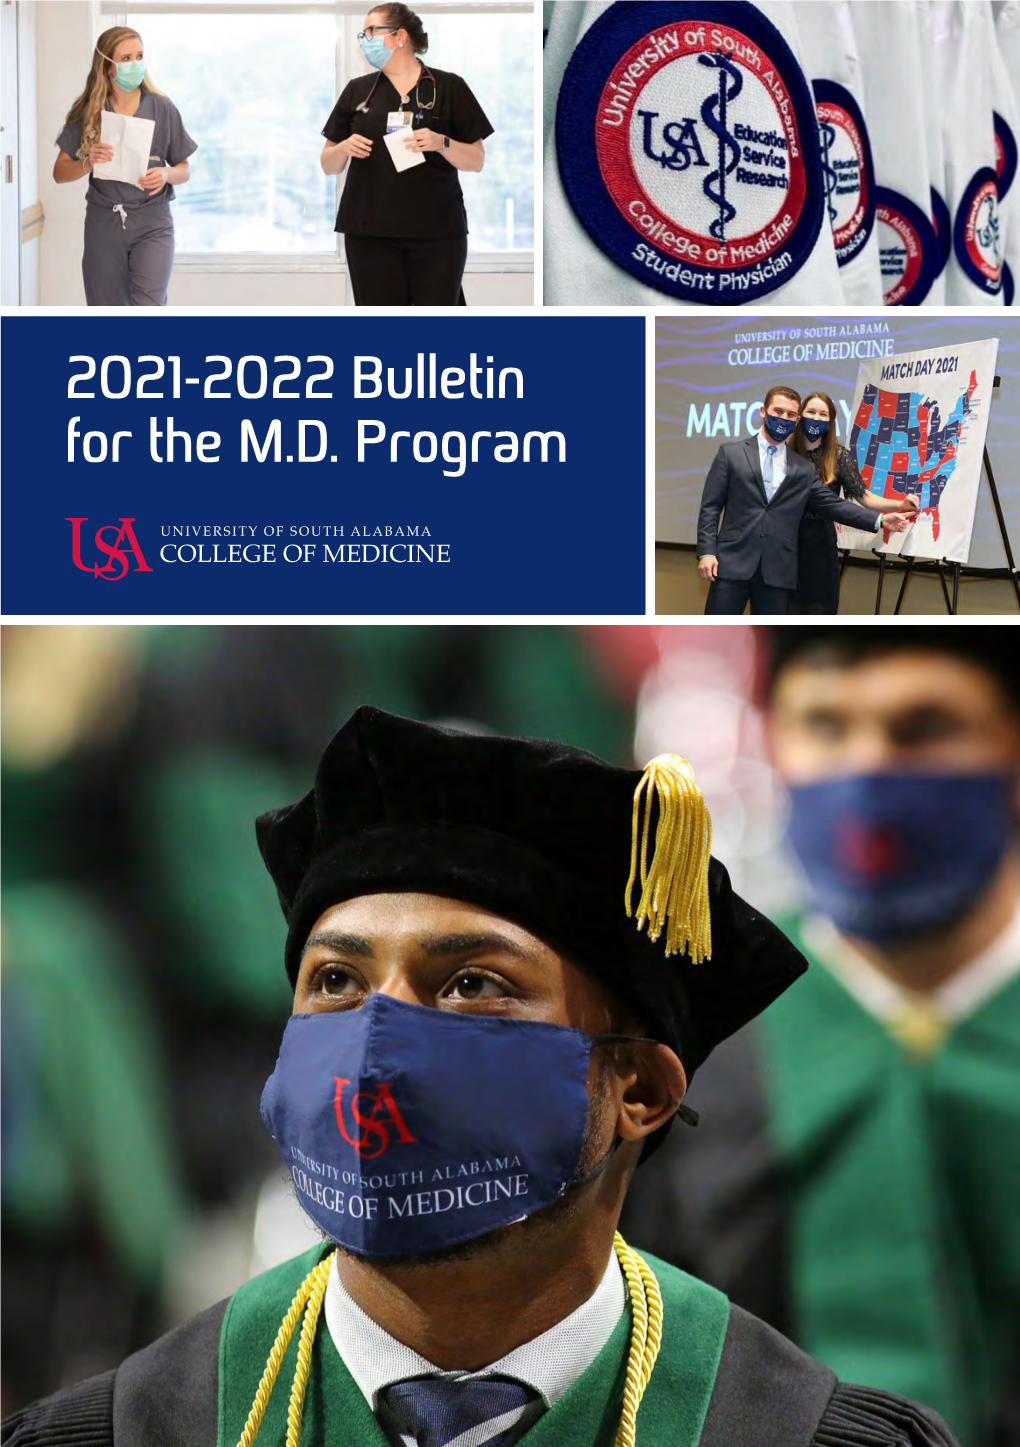 2021-2022 Bulletin for the M.D. Program